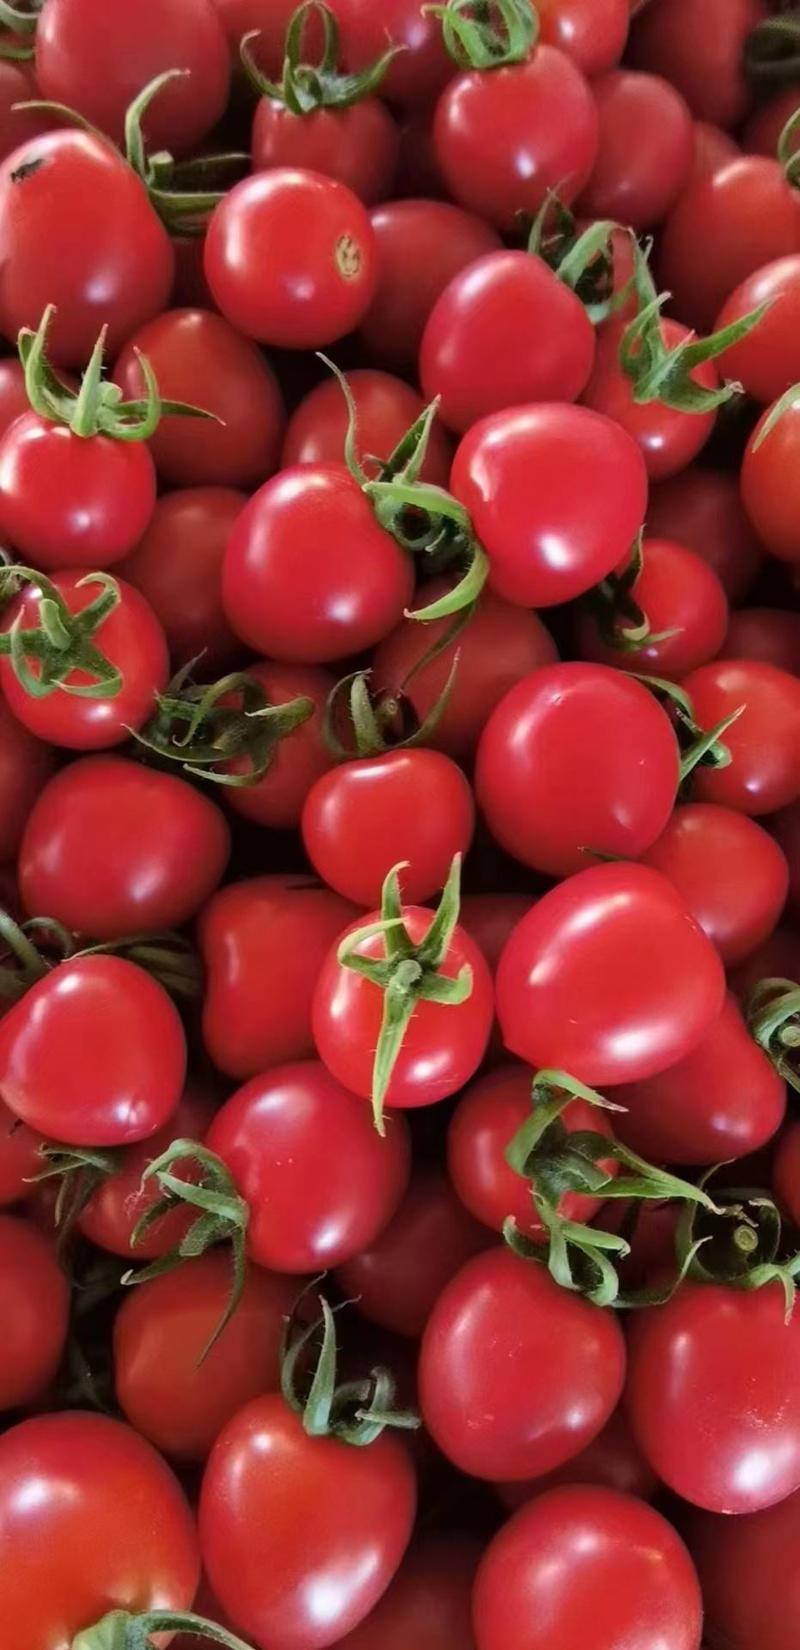 千禧红色圣女果各类小西红柿一手货源视频看货